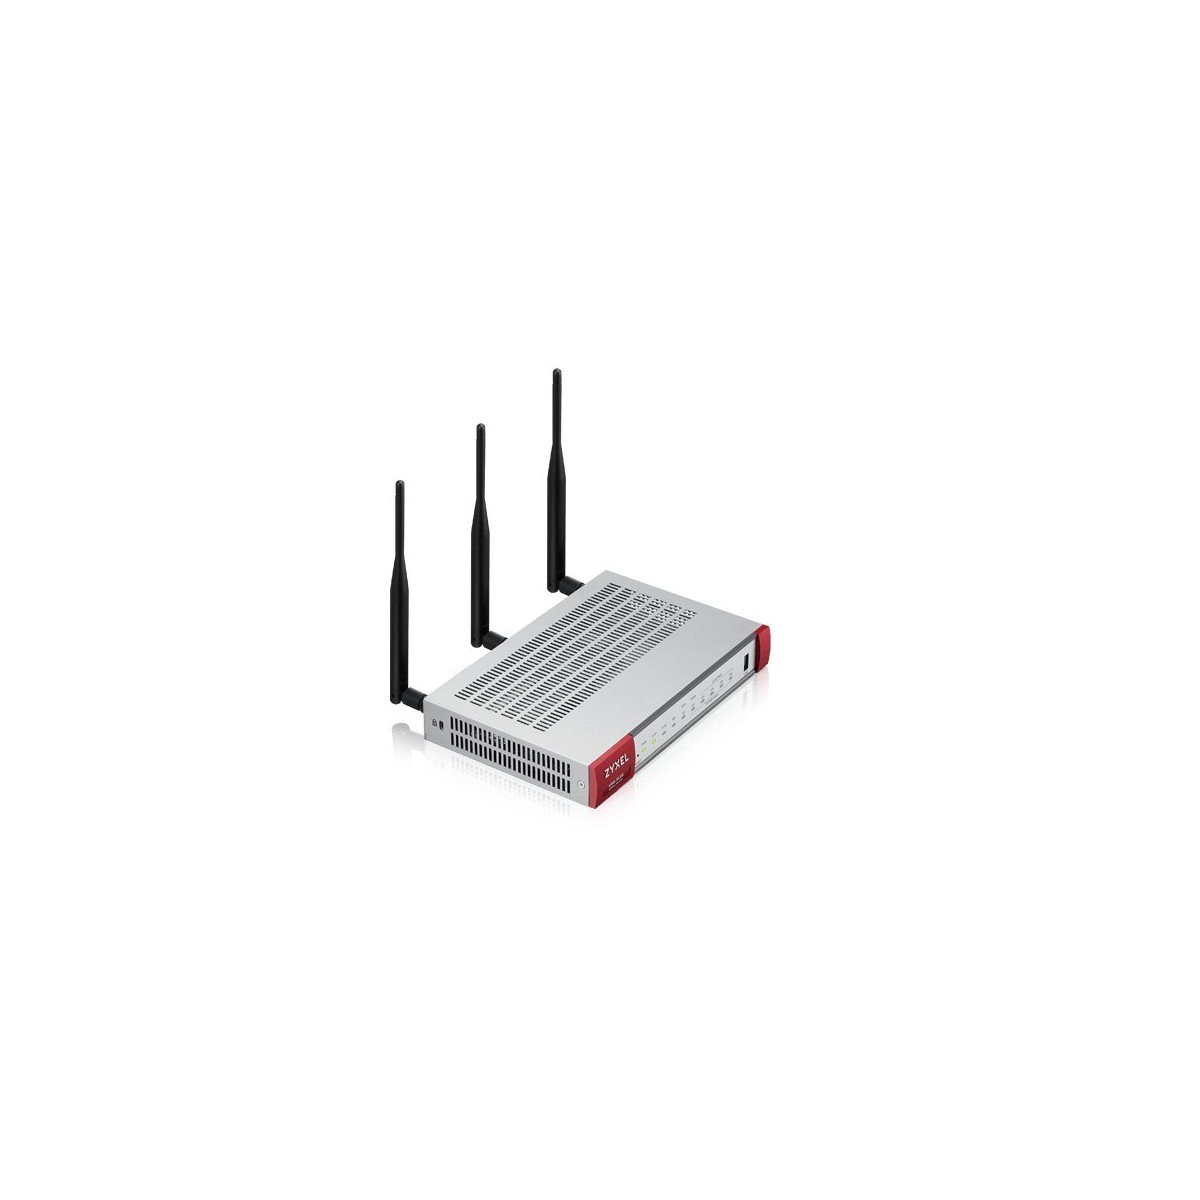 ZyXEL USG FLEX 100W - 900 Mbit/s - 270 Mbit/s - 100 Mbit/s - 989810.8 h - FCC 15 (B) - CE EMC (B),BSMI - 802.11a,802.11b,802.11g